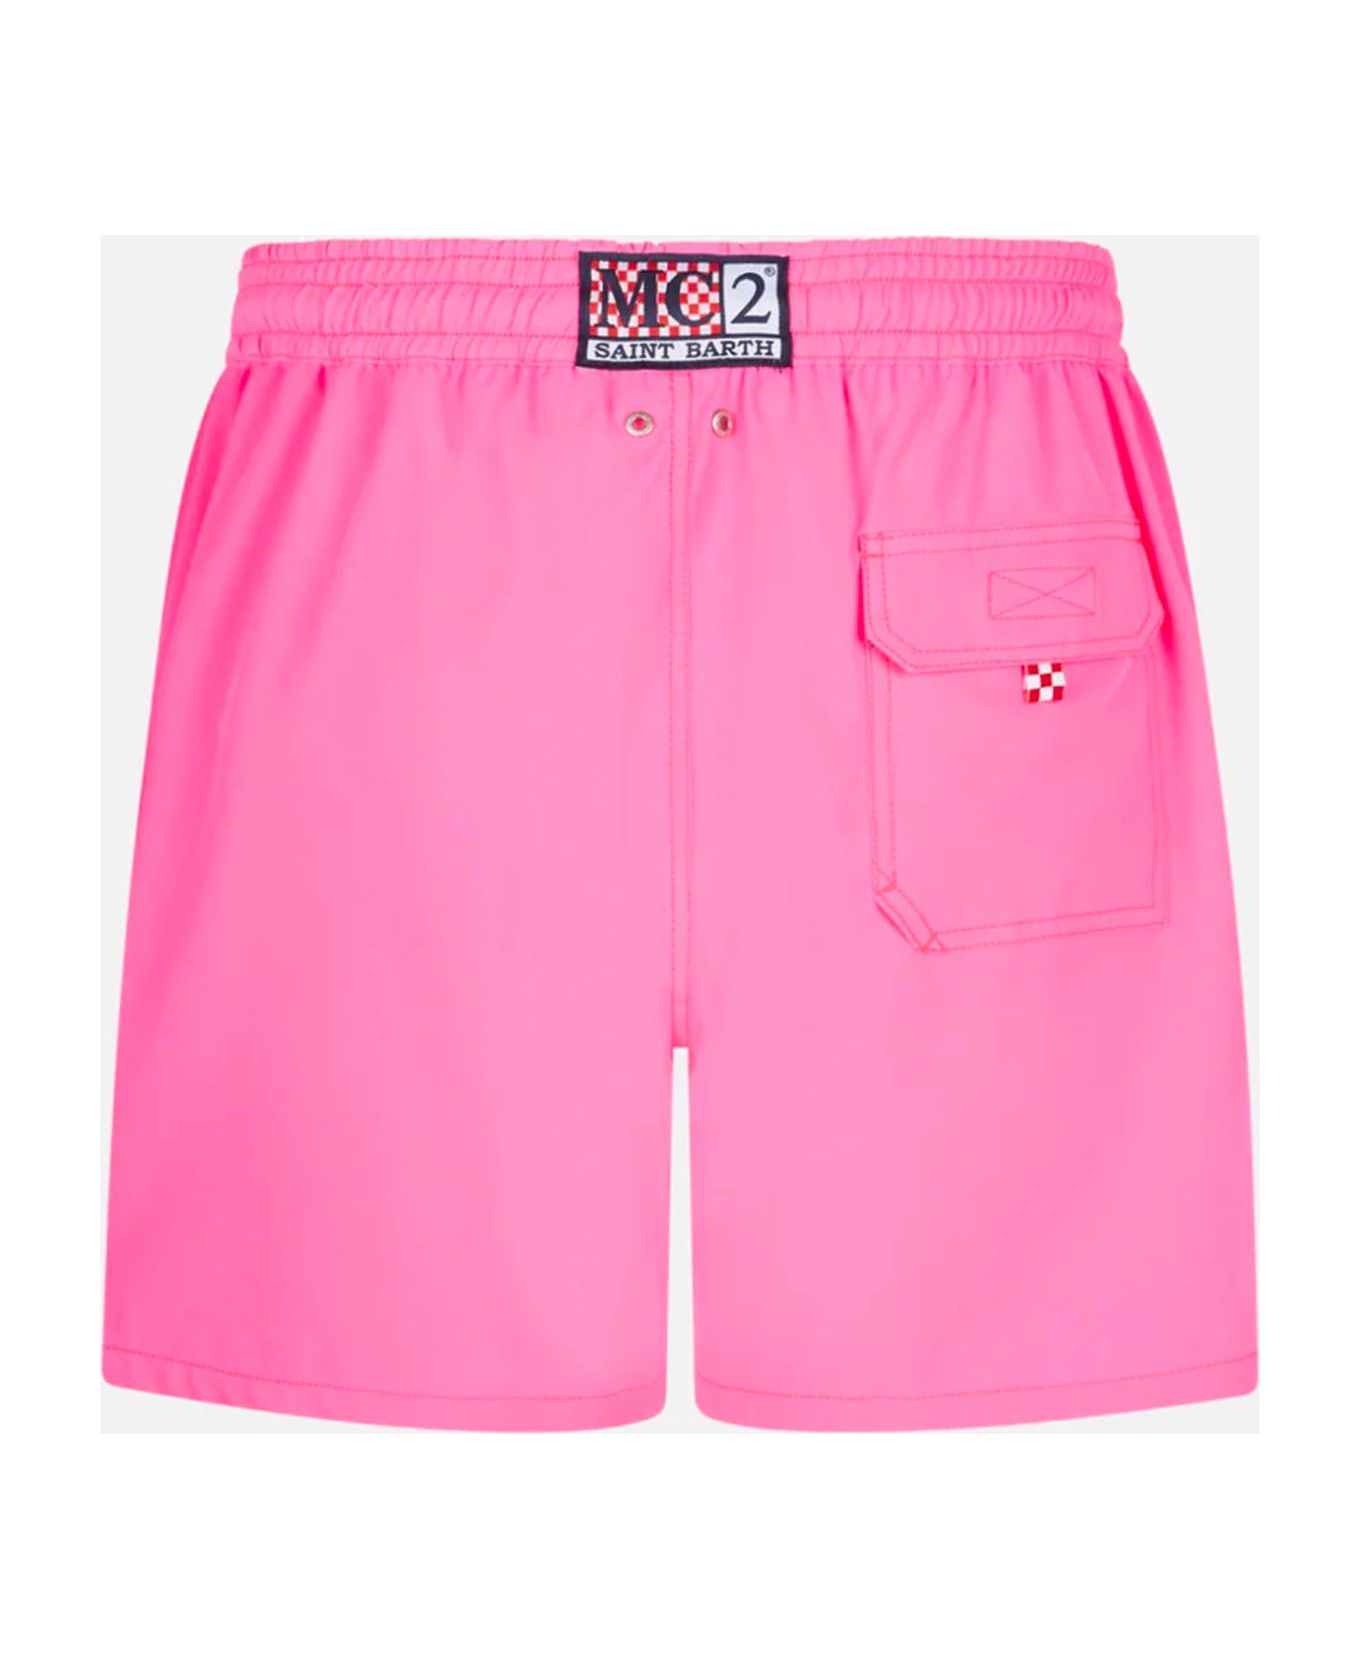 MC2 Saint Barth Man Fluo Pink Comfort Swim Shorts - FLUO スイムトランクス